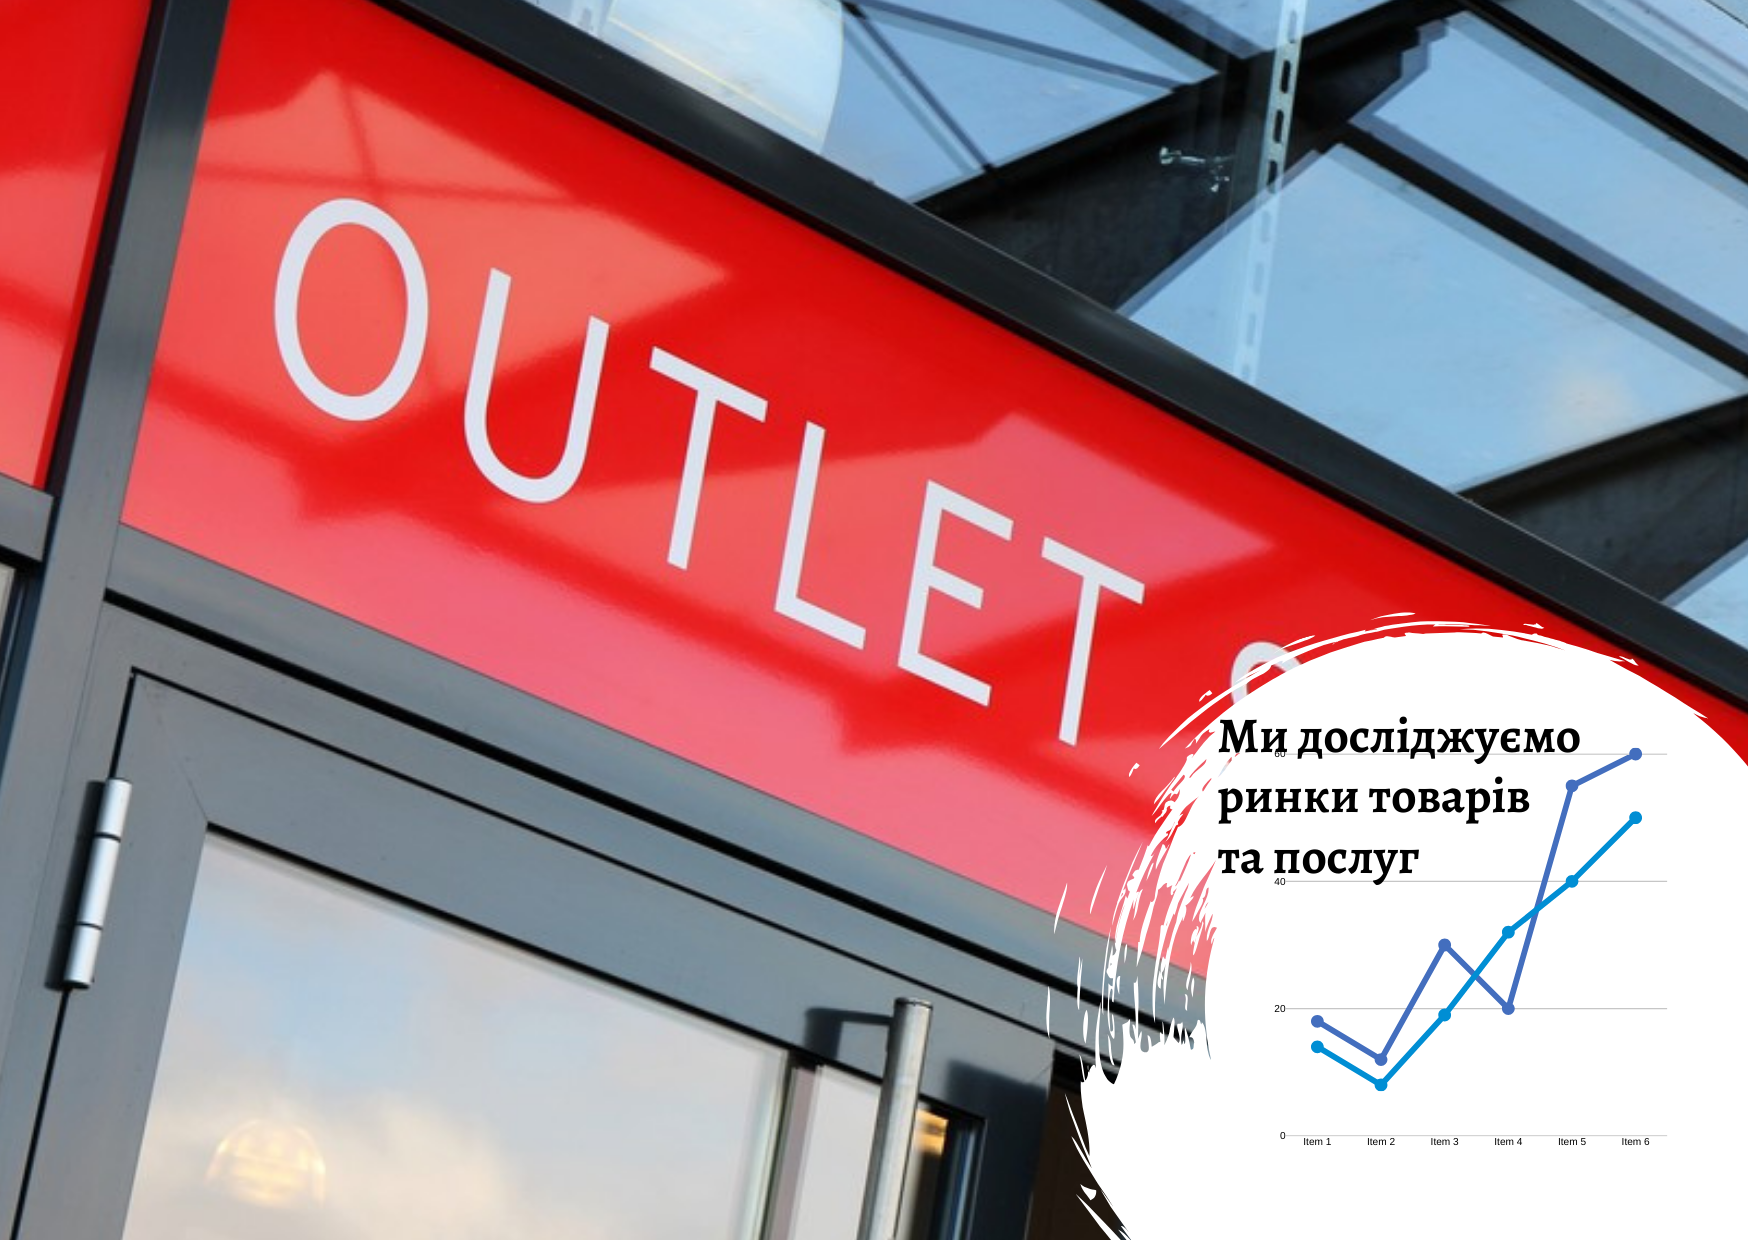 Рынок аутлет-магазинов в Украине, Казахстане и Польше: краткий обзор